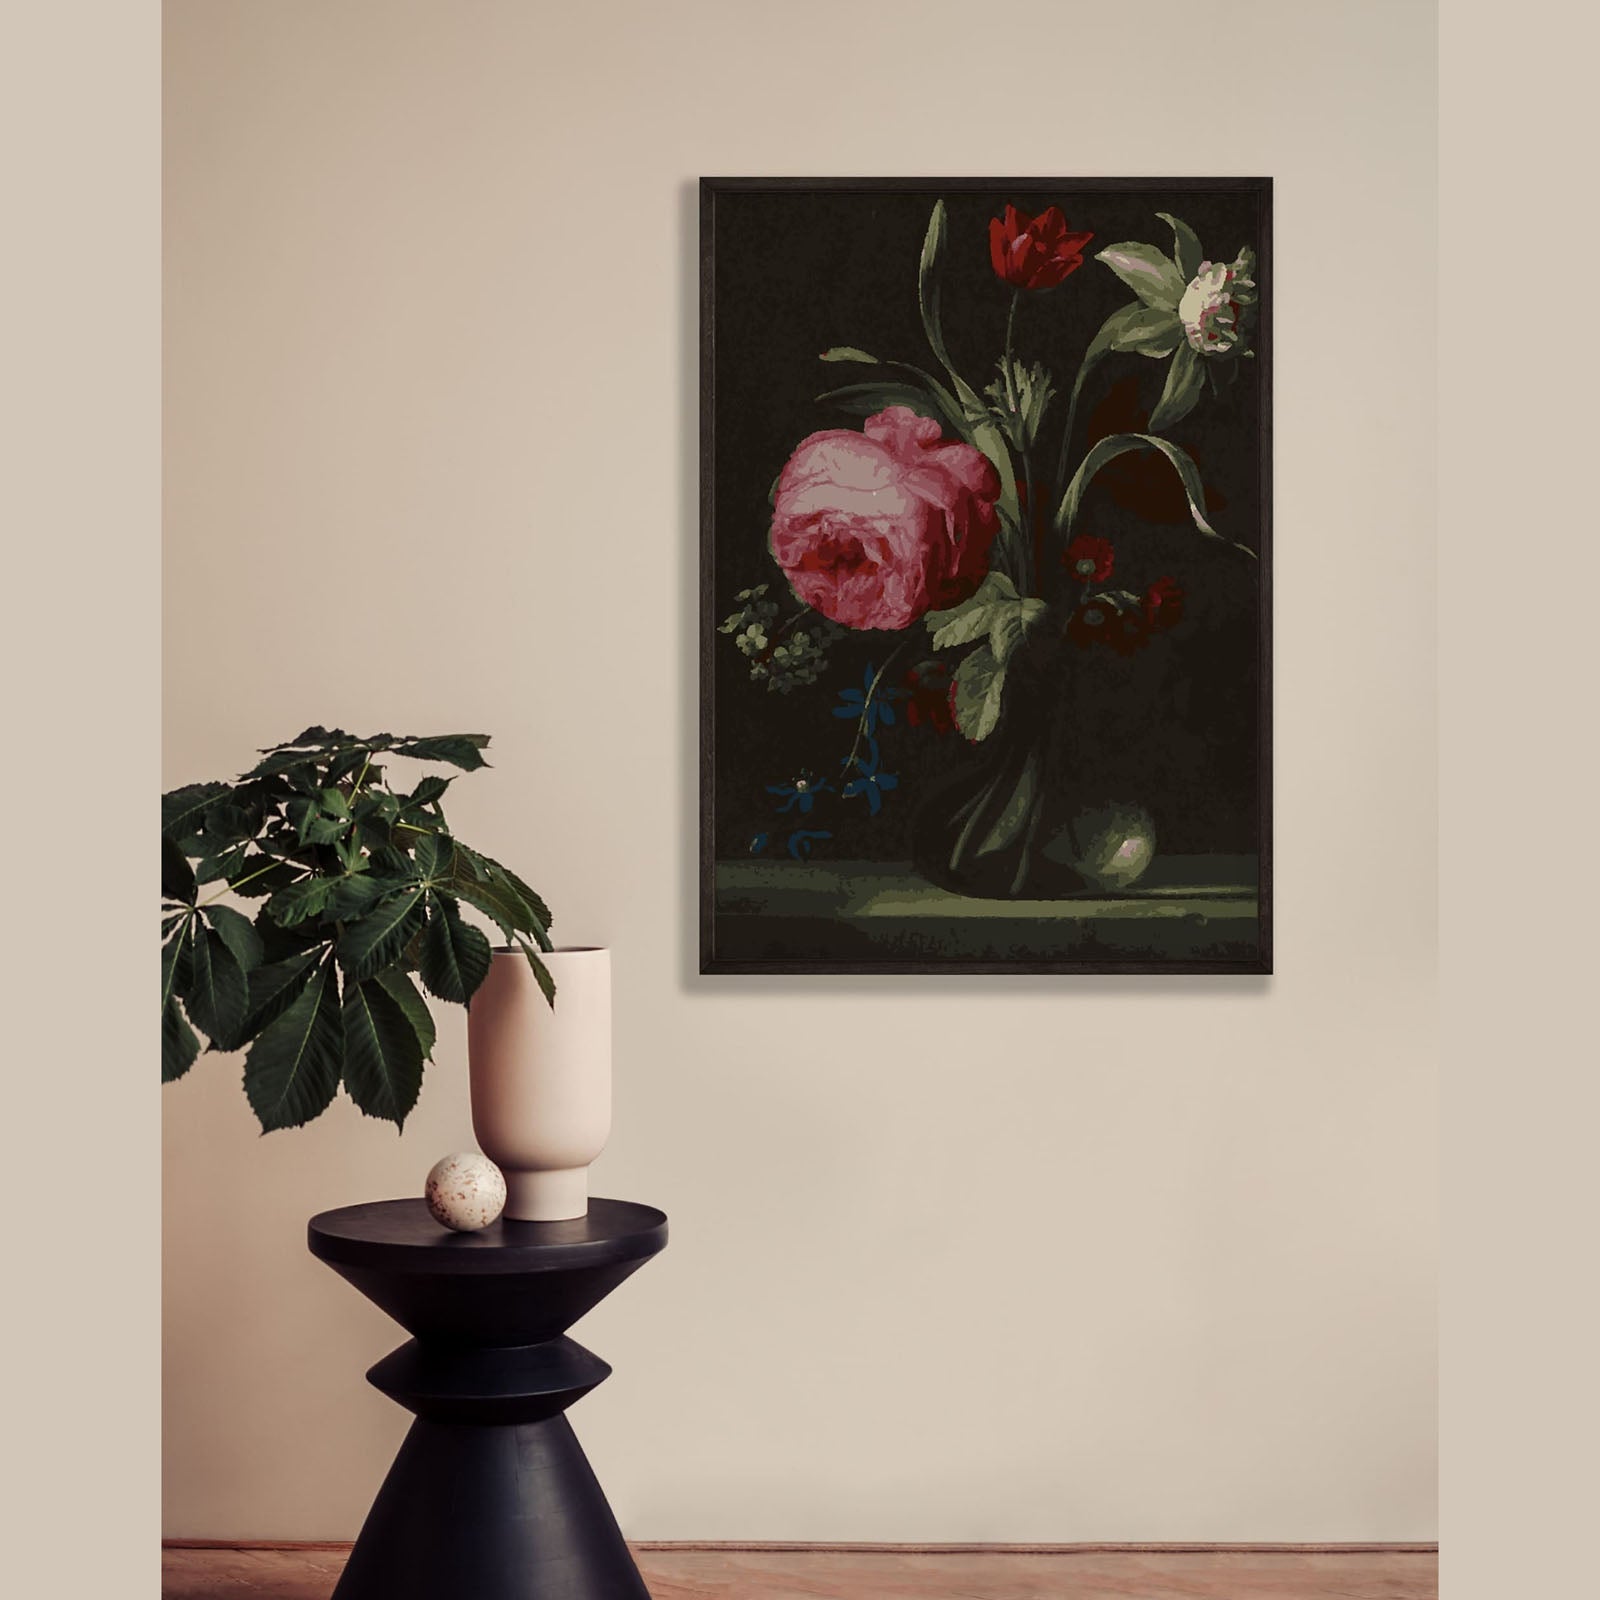 imitart Malset - Simon Verelst "Flowers in a Vase"